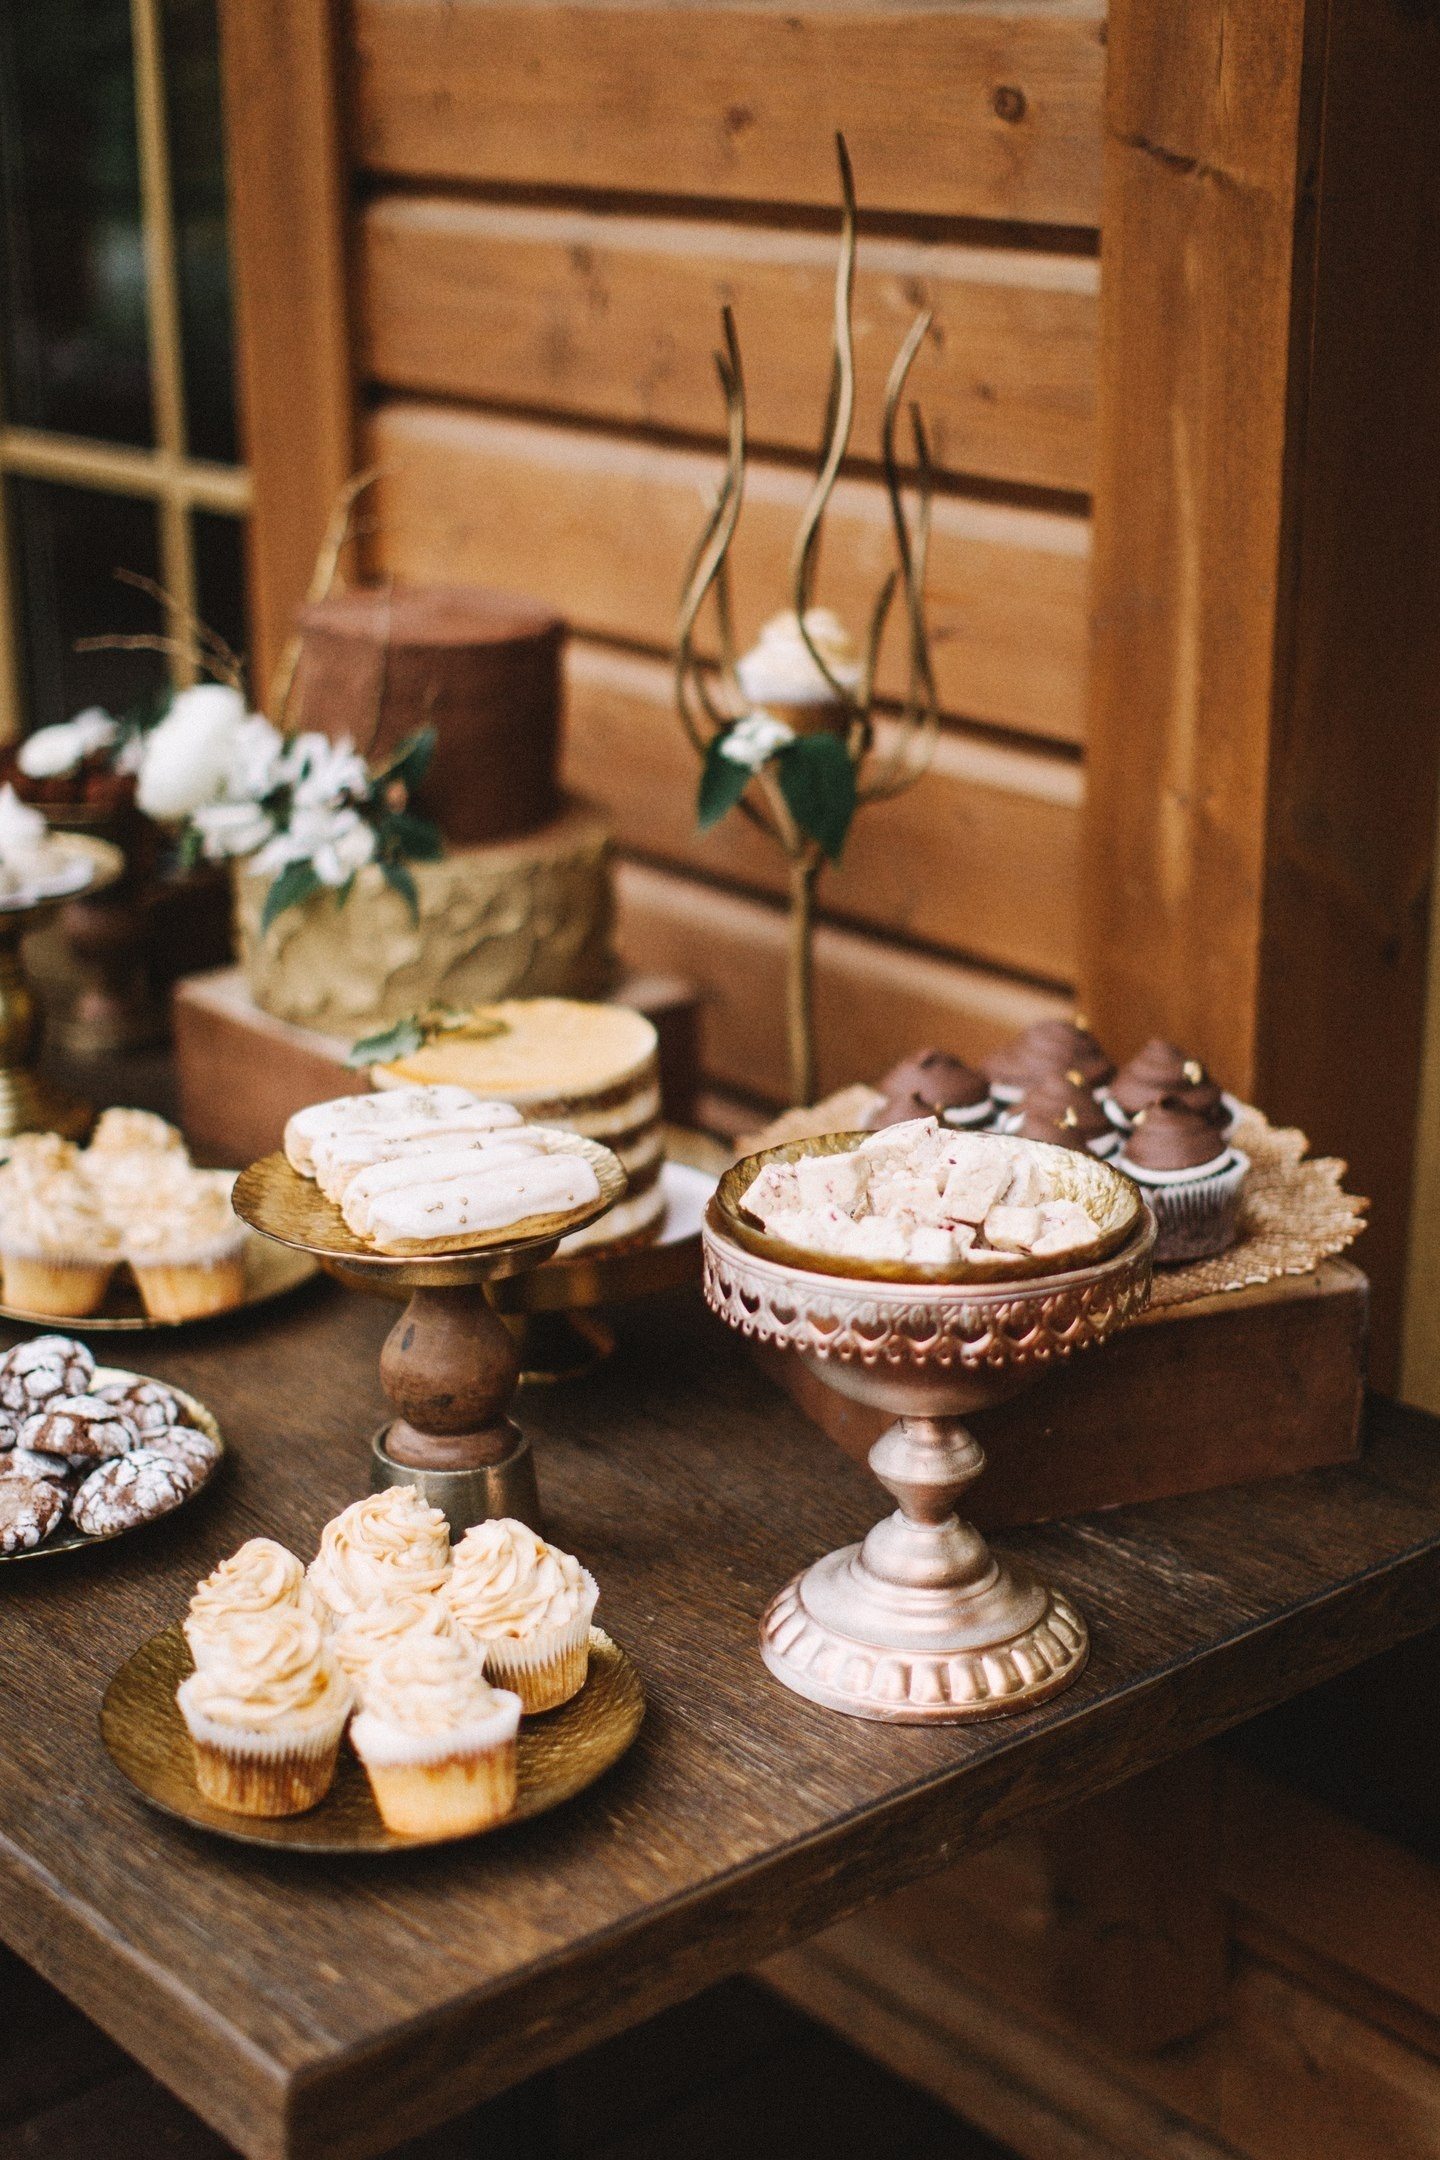 Rozbité tyče čokolády, lanýže, moka vzdušné dezerty, zdobené kávová zrna a prolamované sušenky s polevou ve stylu svatby vypadají skvěle ve společnosti starých krabic a ozdobených stojanů